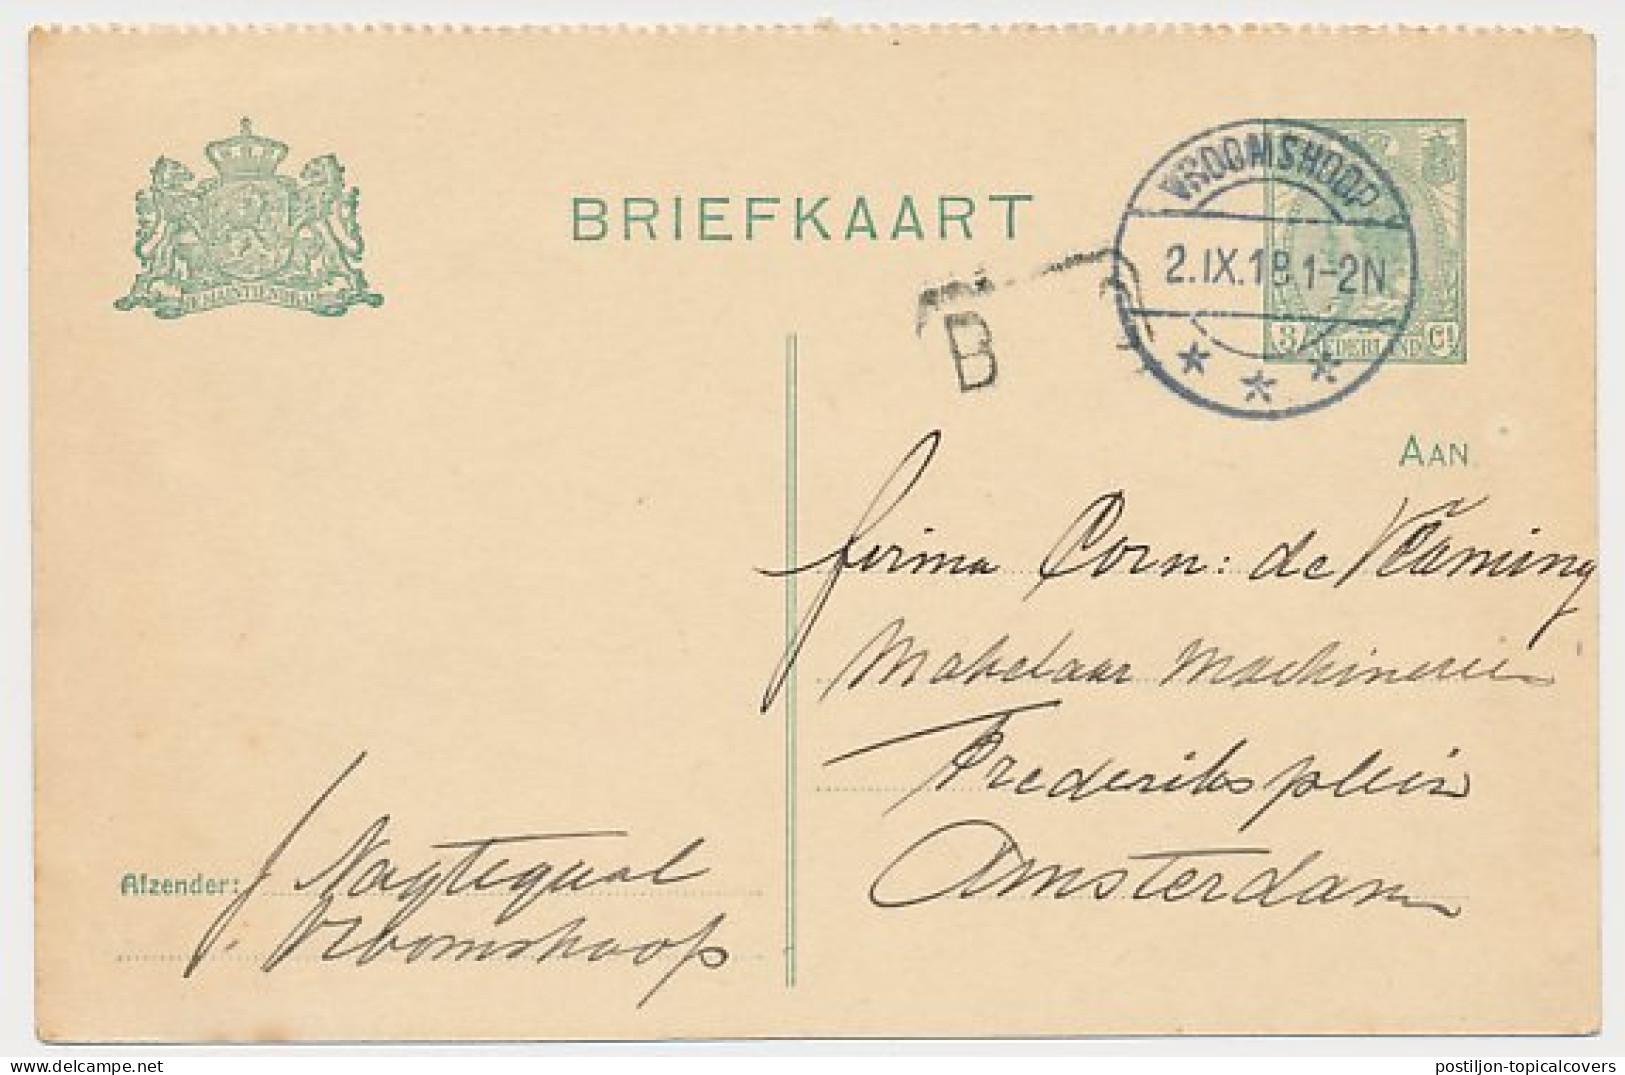 Briefkaart G. 99 B I Vroomshoop - Amsterdam 1918 - Entiers Postaux